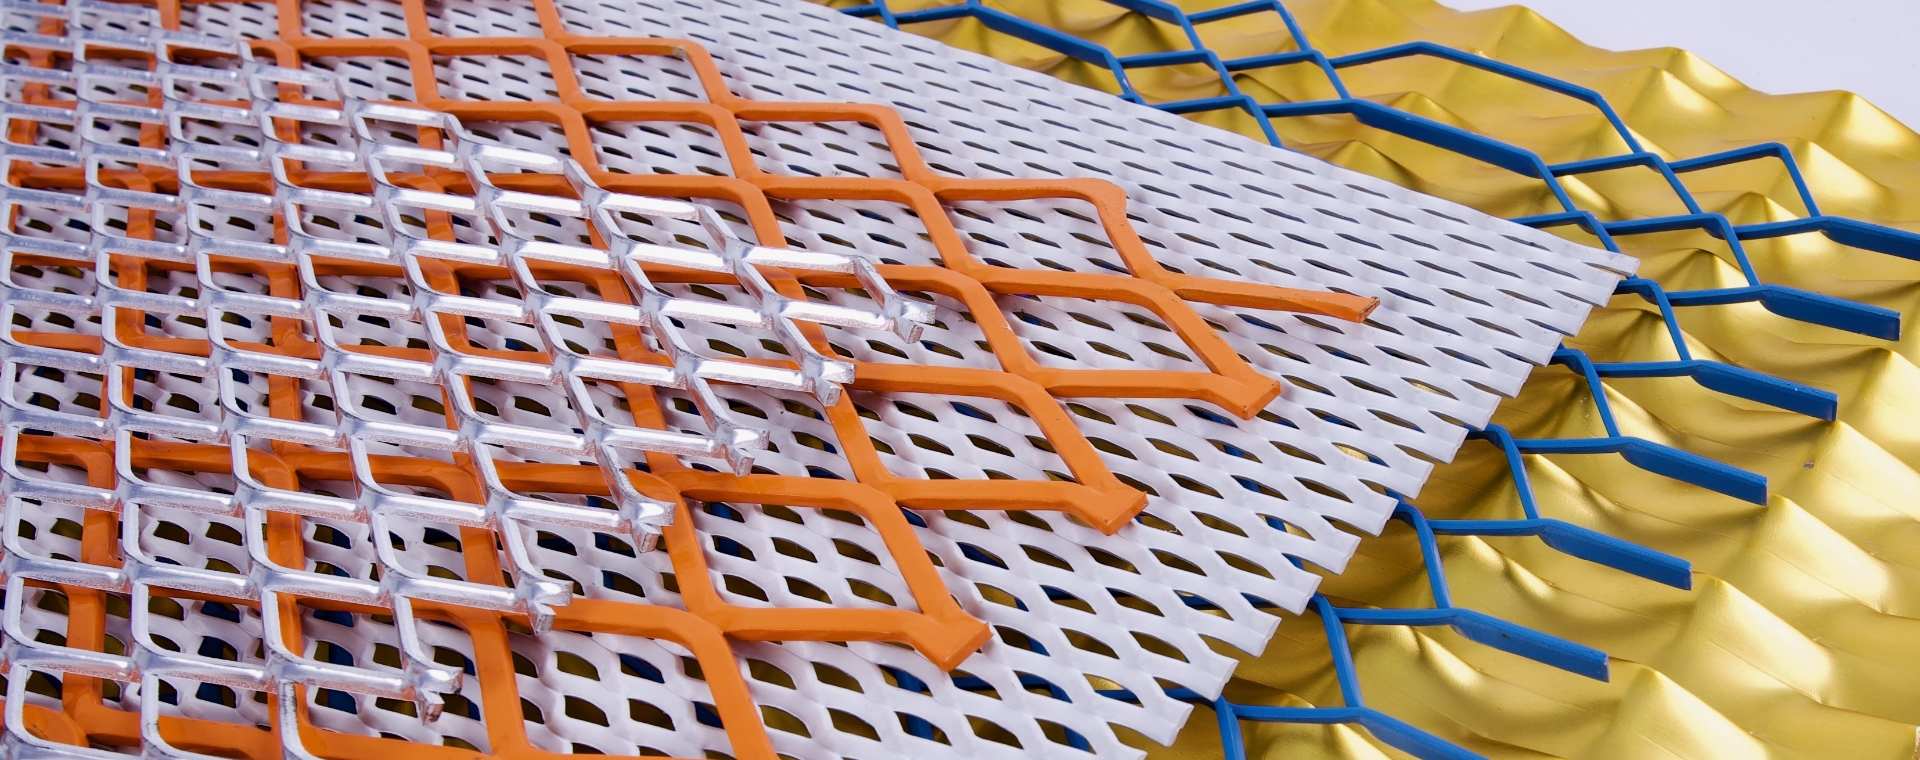 5個不同顏色的鋼板網片放在一起。